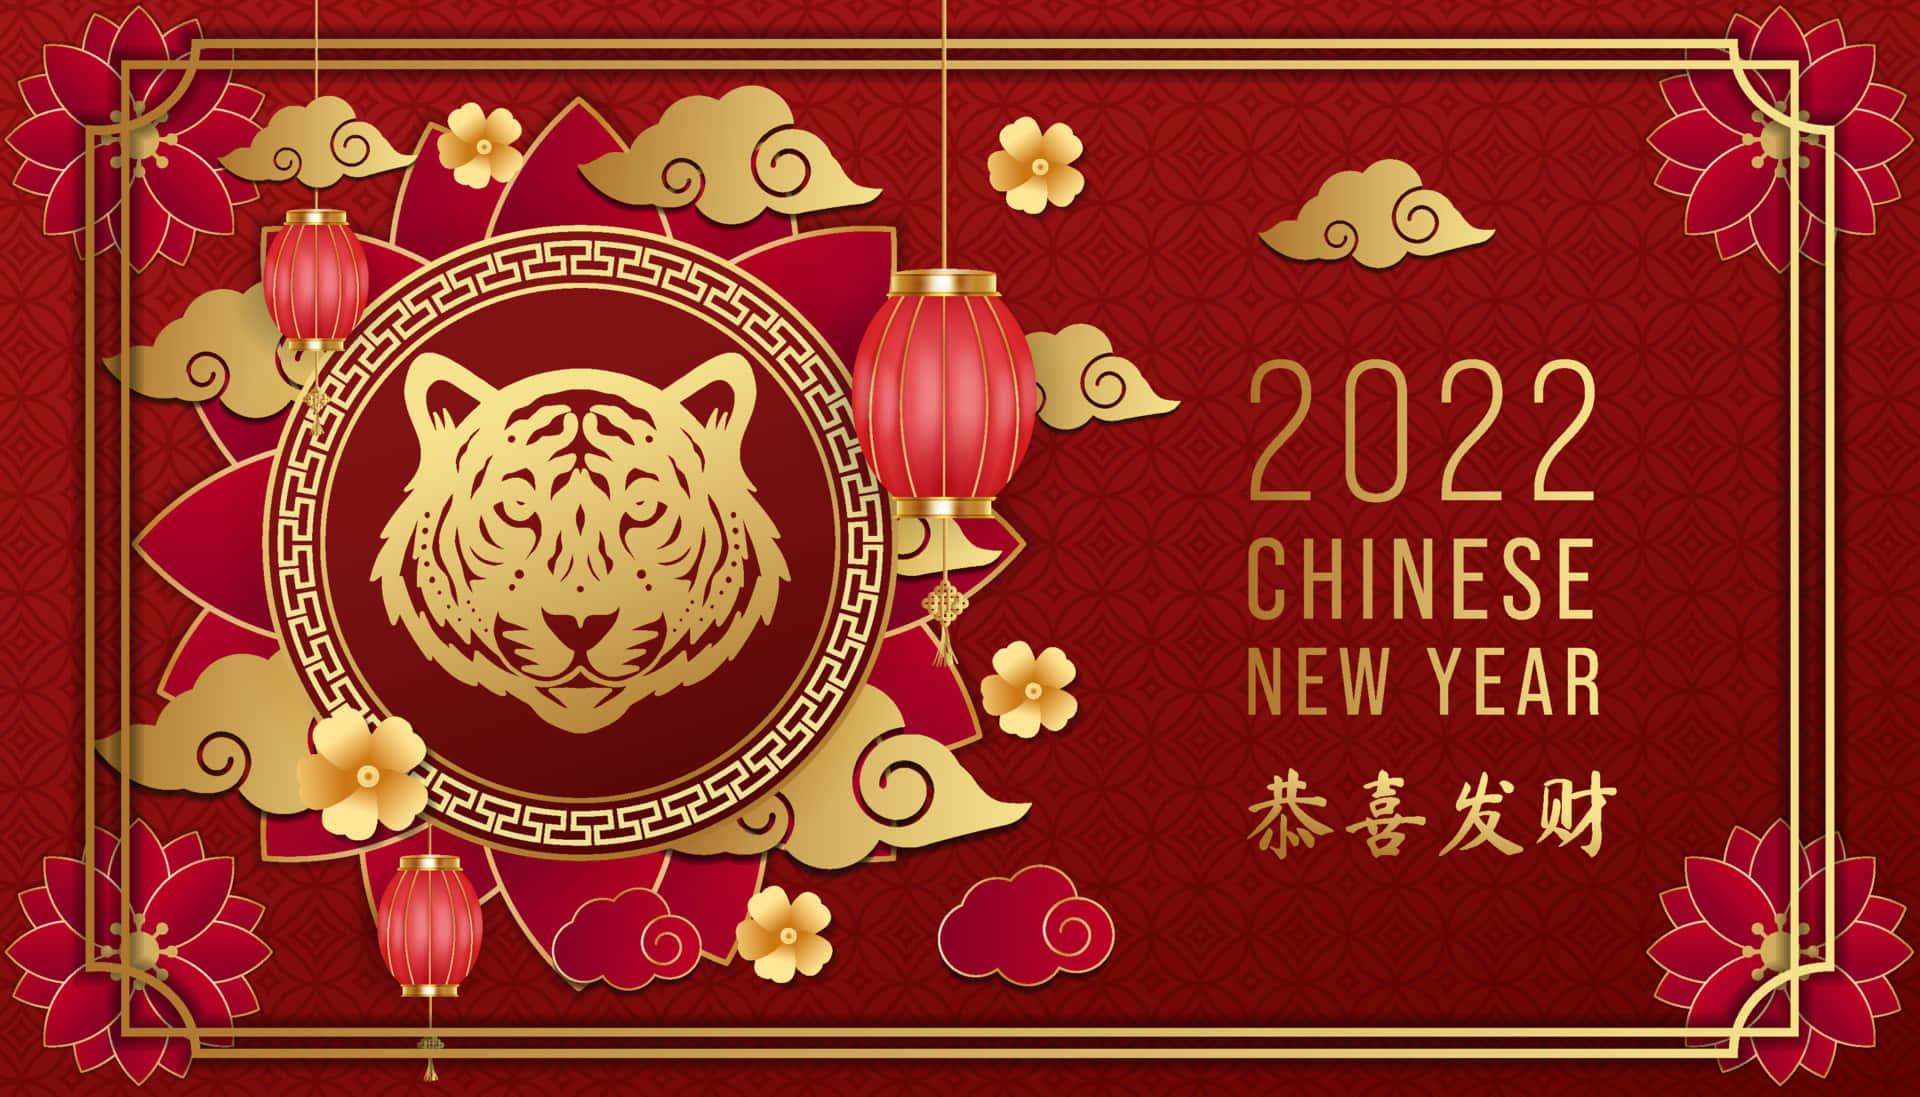 Velkommentigerens År Med Det Kinesiske Nytår 2022 På Din Computer Eller Mobil Skærm!